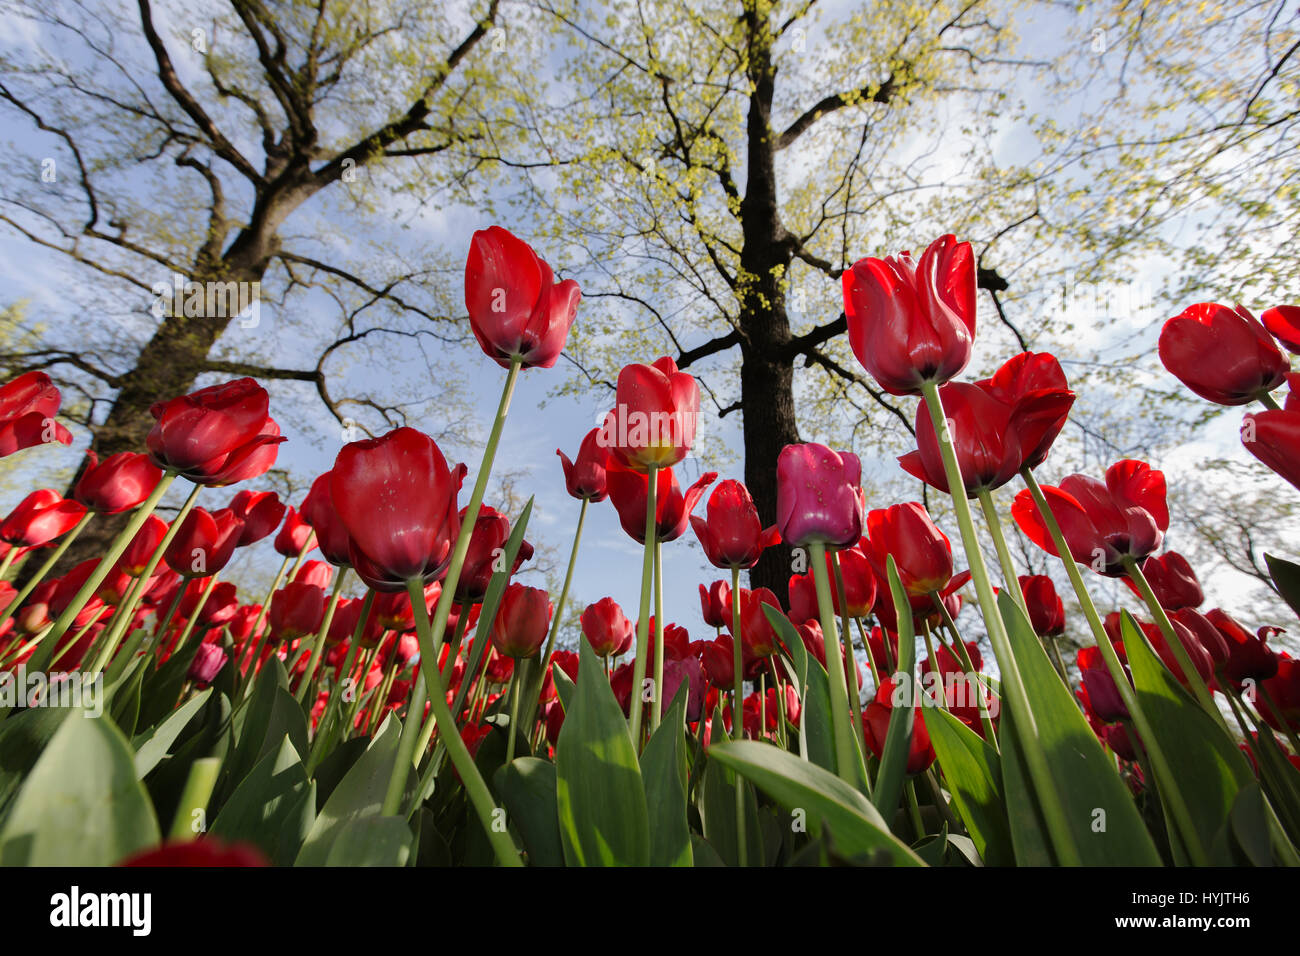 Castello di Pralormo,fiorente tulipani in aprile per l'evento "esser Tulipano',Piemonte,l'Italia,l'Europa Foto Stock